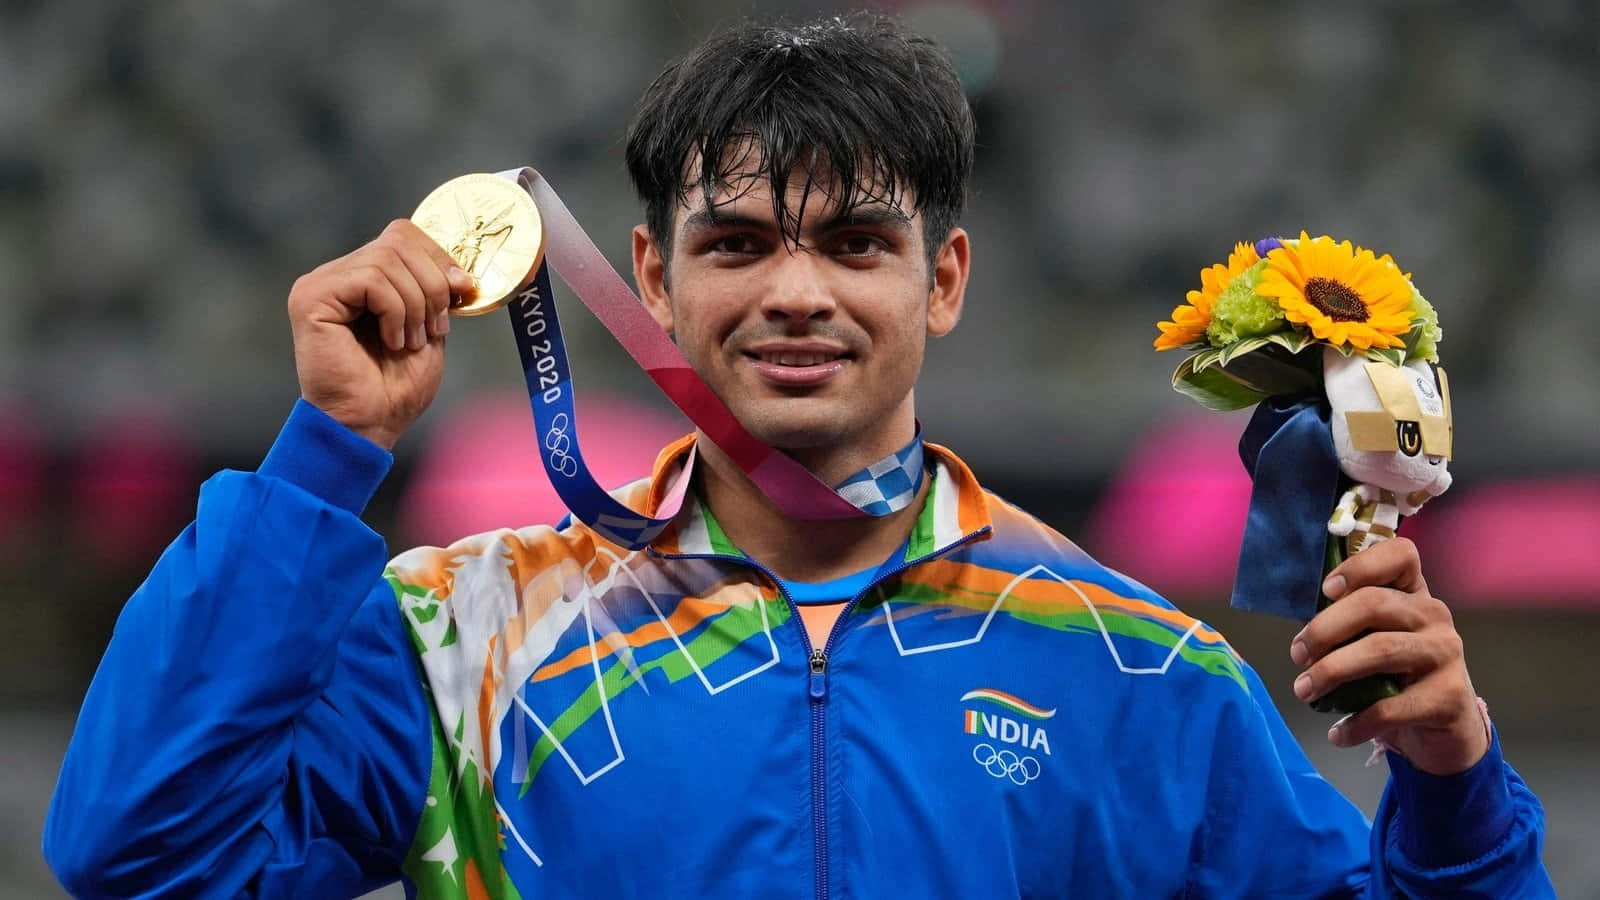 Atletaindiano De Lançamento De Dardo, Neeraj Chopra, Estabelece Um Novo Recorde Mundial.